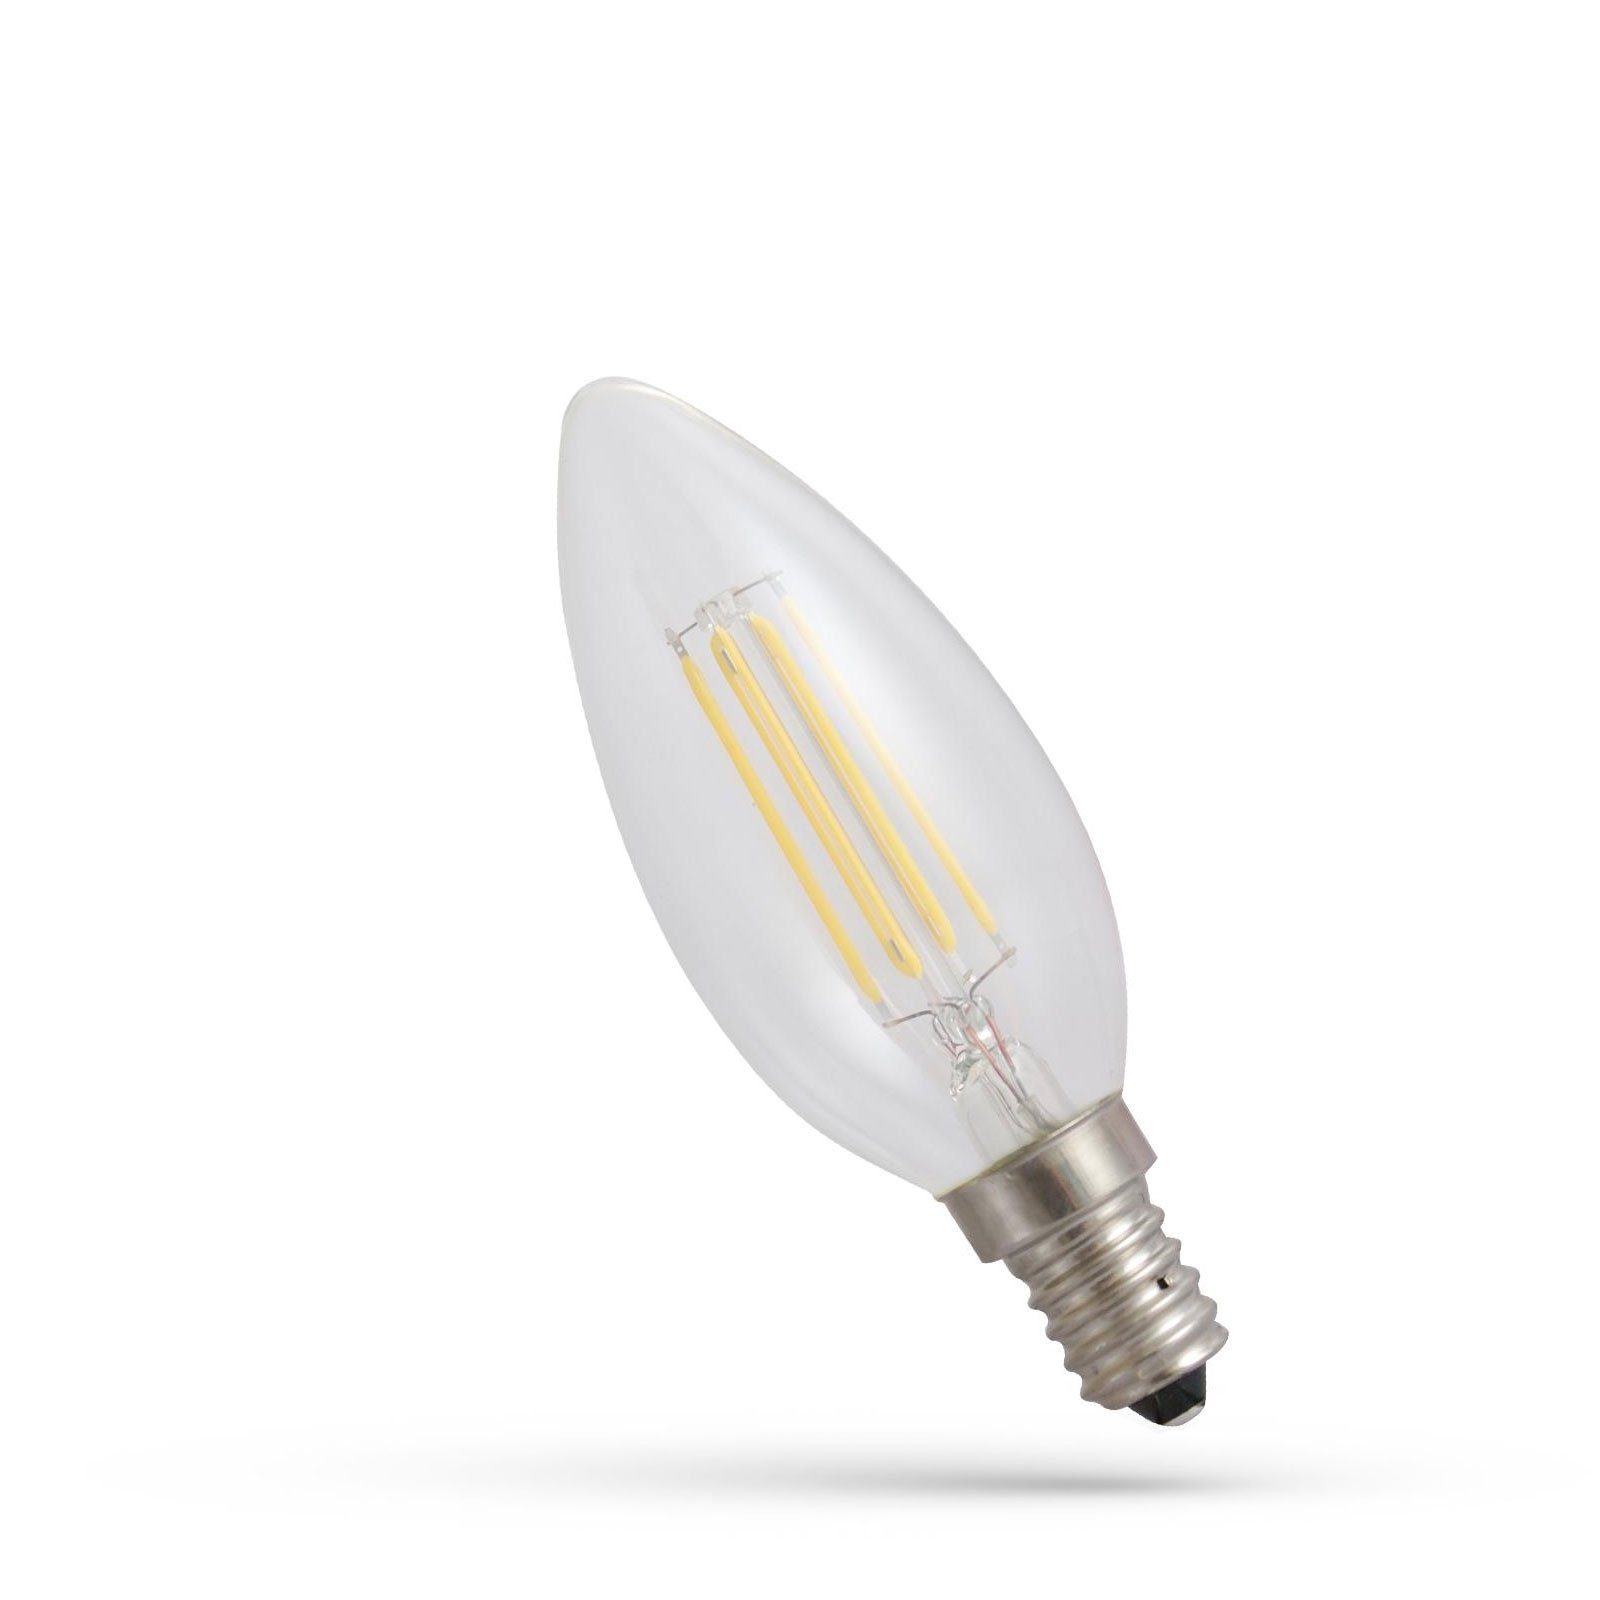 SpectrumLED LED-Leuchtmittel 1800K, 300° Extra-Warmweiß Extra klar 540lm C35 Kerze E14 6W LED Warmweiß Filament E14